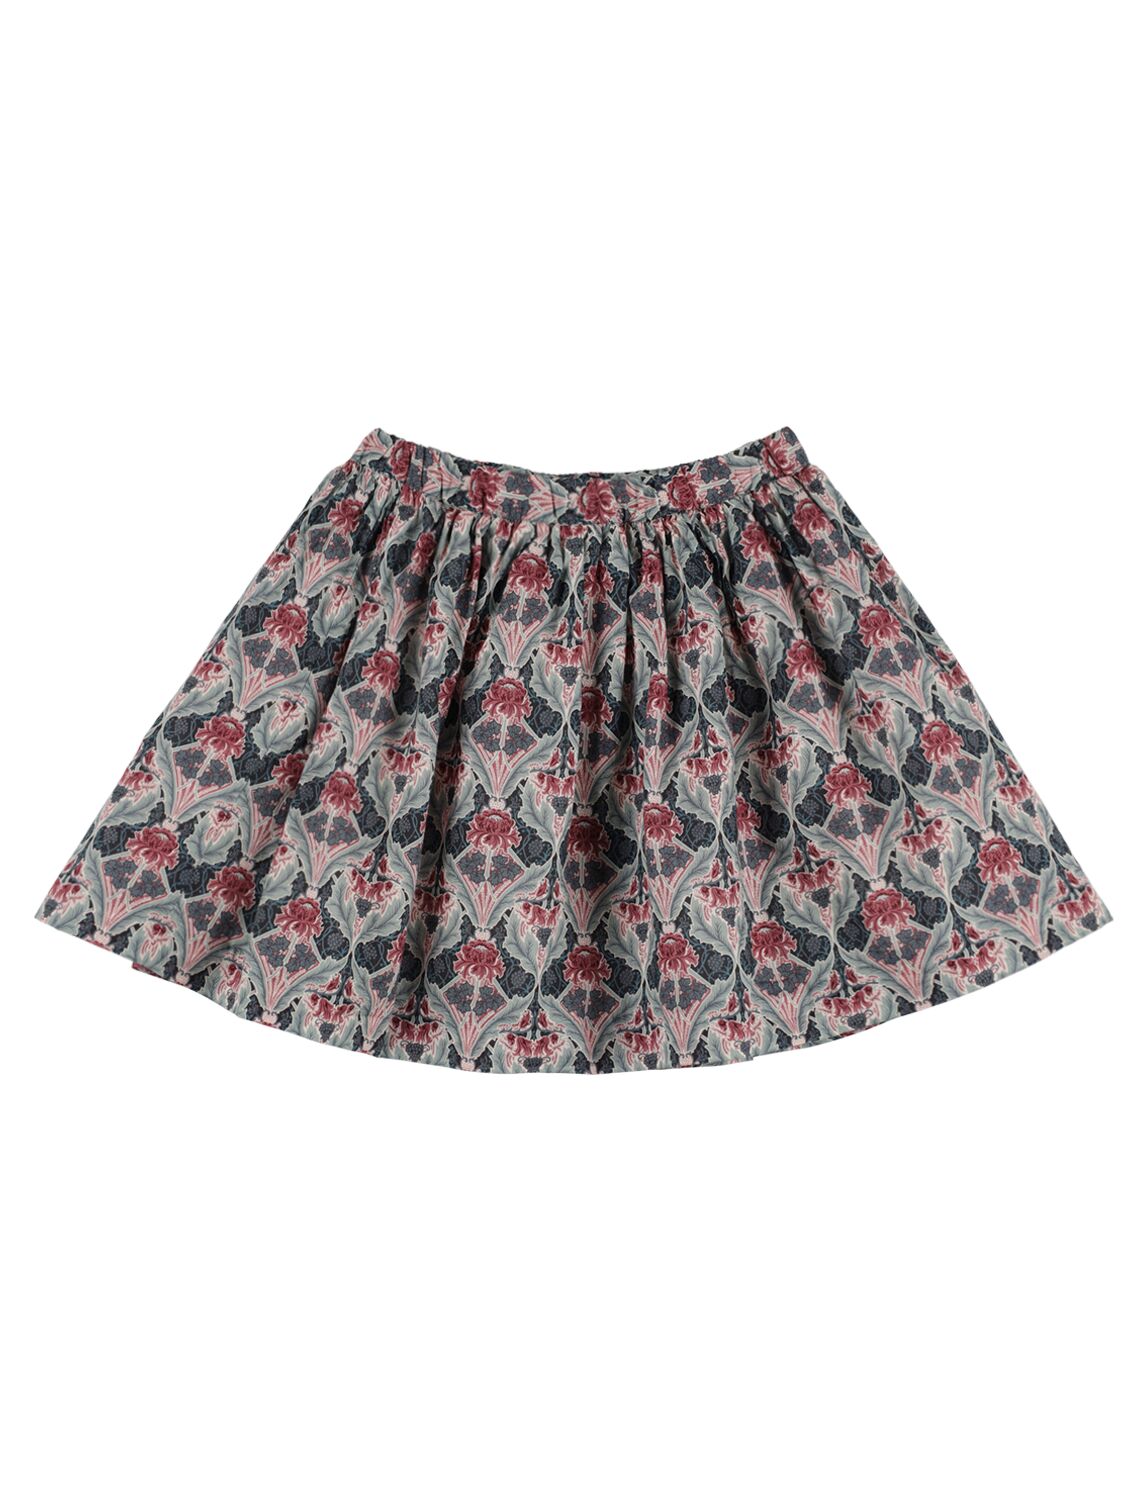 Image of Calipso Printed Cotton Skirt